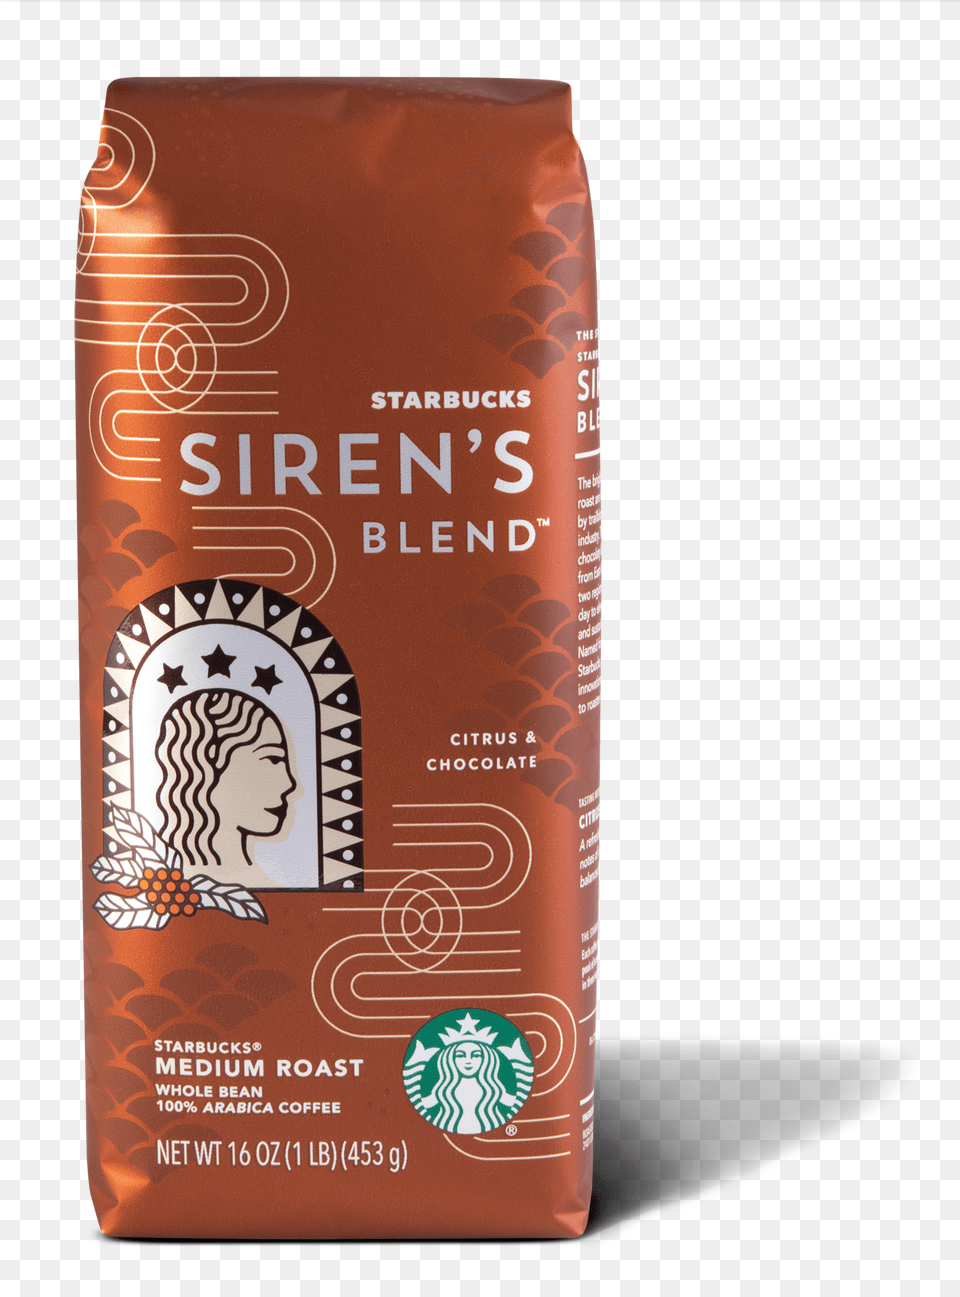 Starbucks Siren S Blend Starbucks Sirens Blend, Baby, Person, Bottle, Face Png